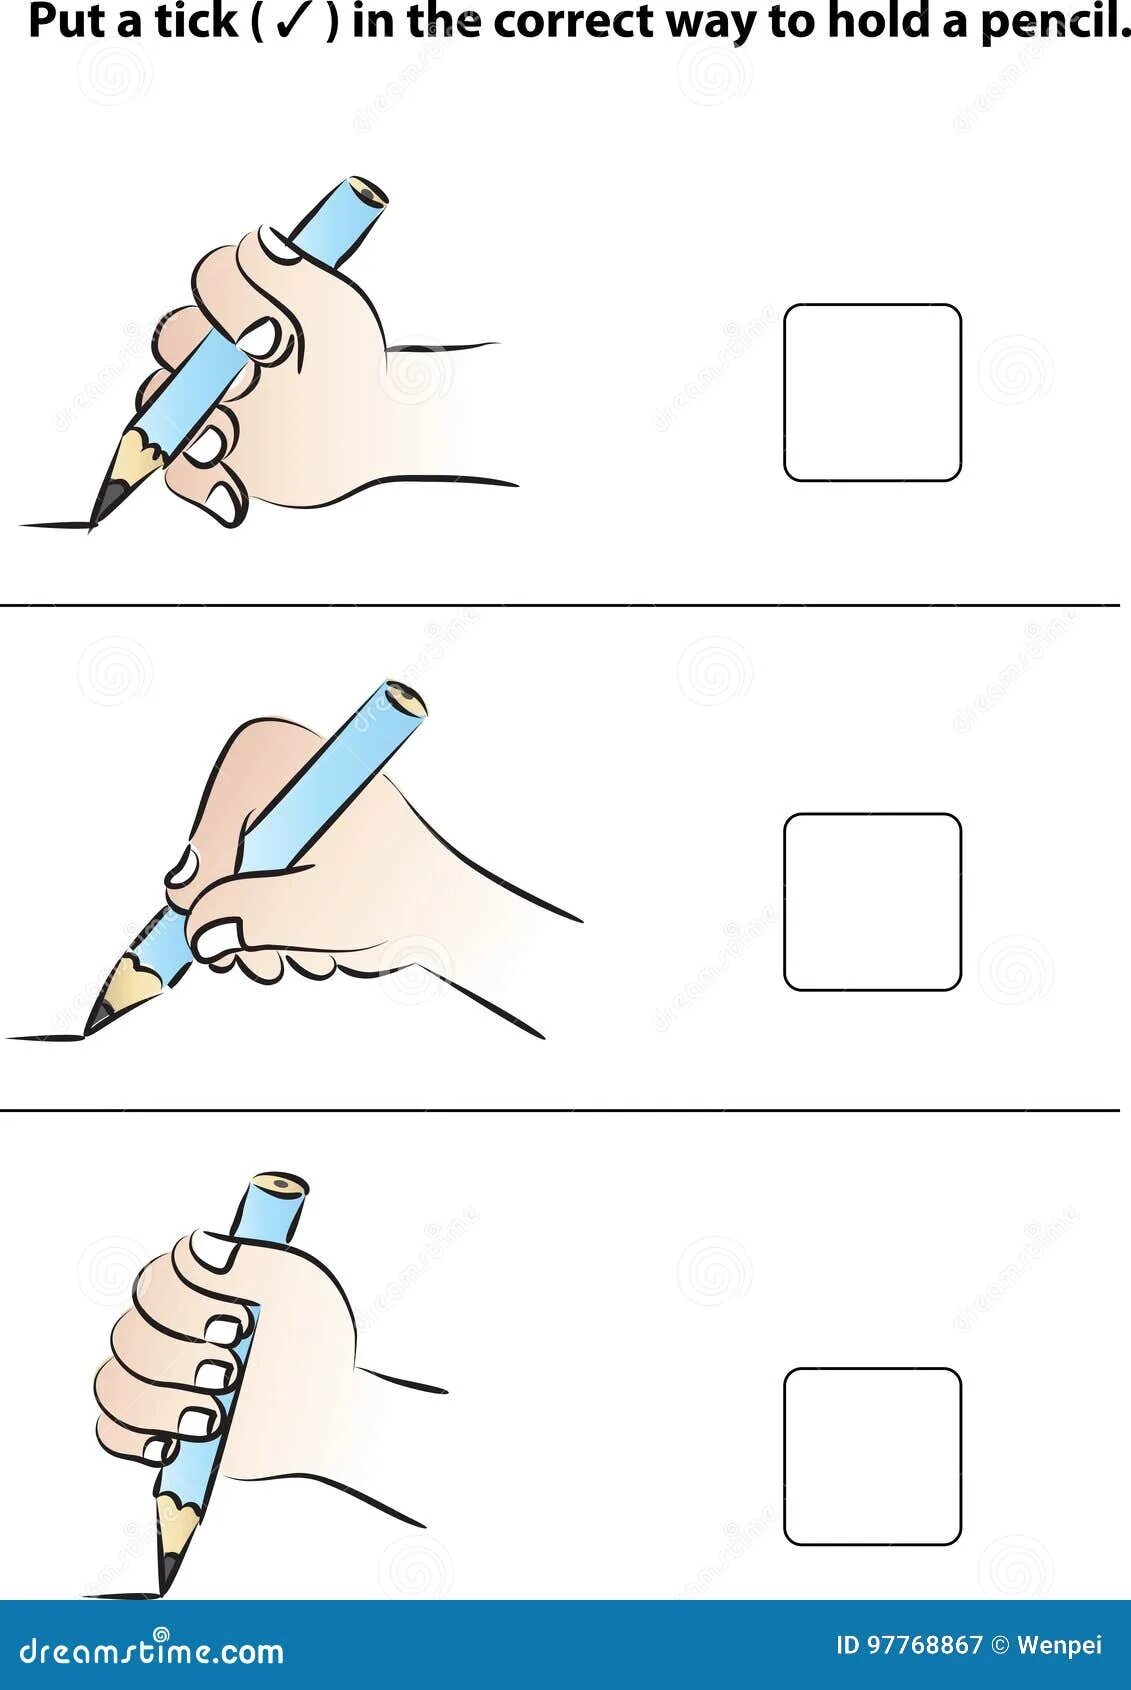 Карандашек или карандашик как. Правильно держать карандаш. Неправильно держит карандаш. Правильно держим карандаш картинка для детей. Как правильно держать карандаш ребенку.